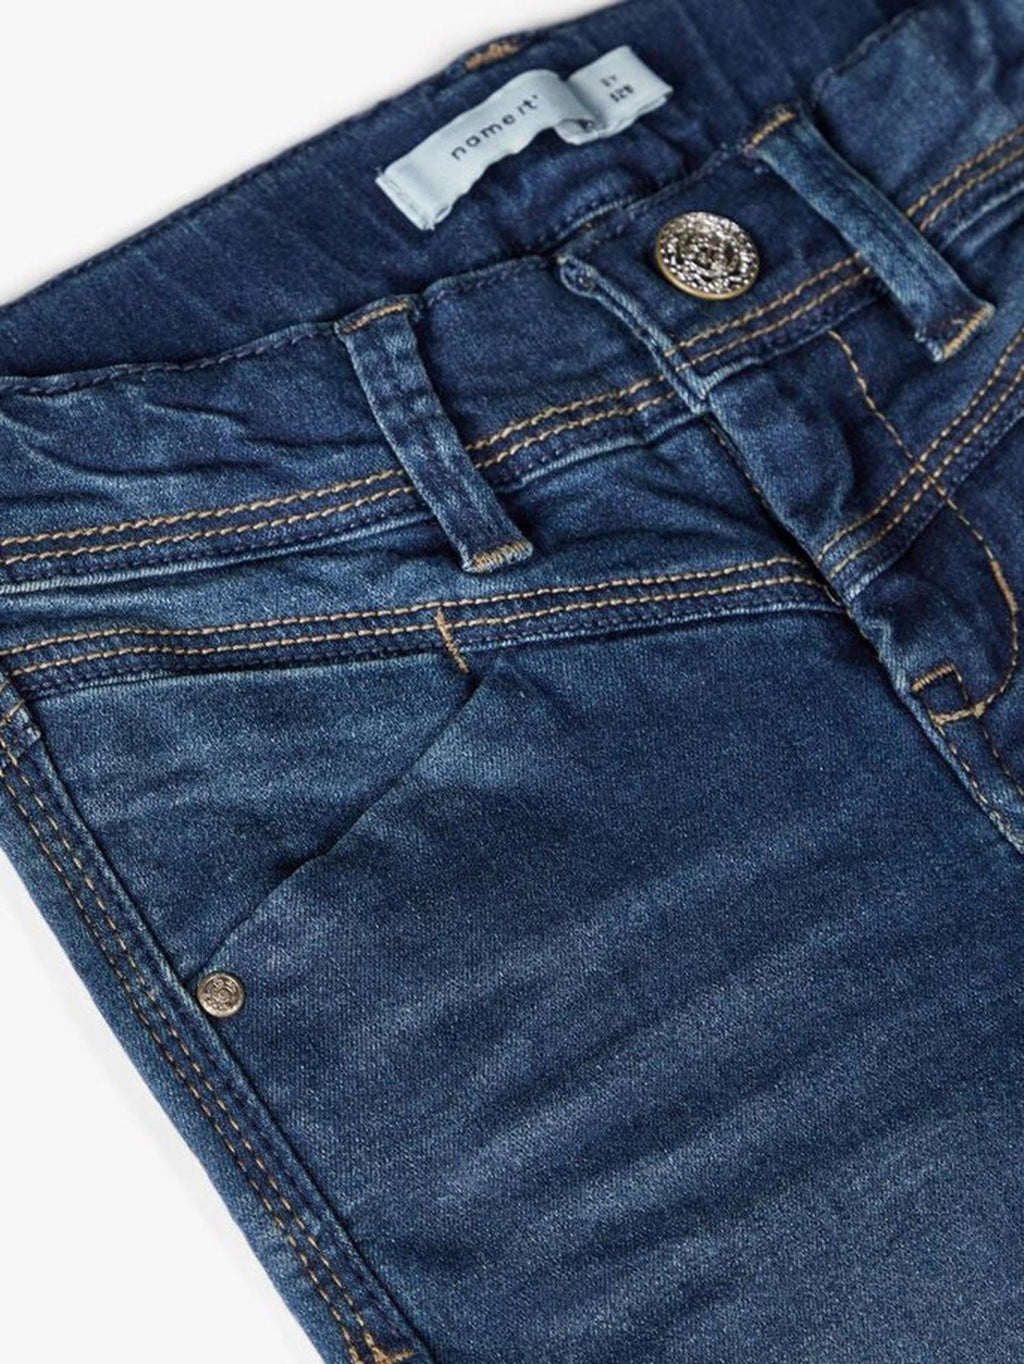 Skinny Fit Jeans - Mørkeblå Denim